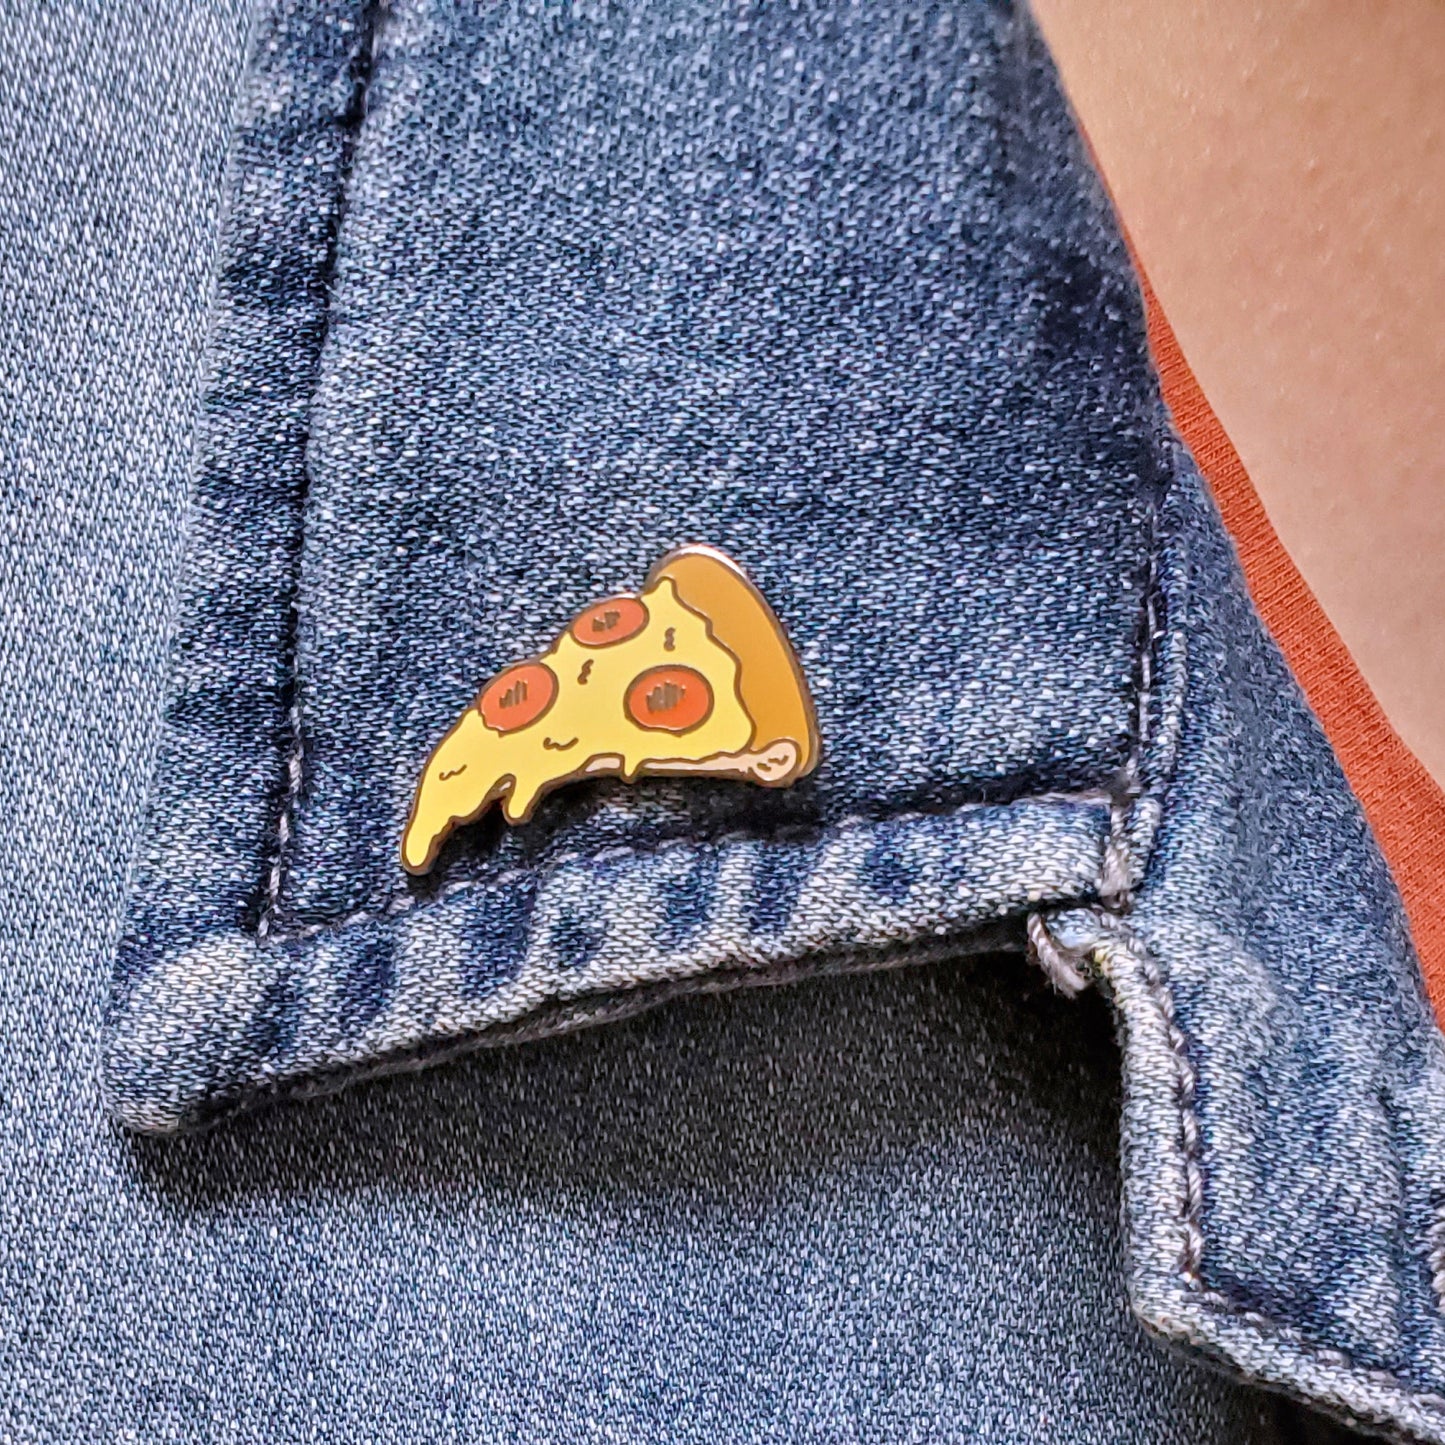 Pizza Slice Pin - Kolorspun Enamel Pins